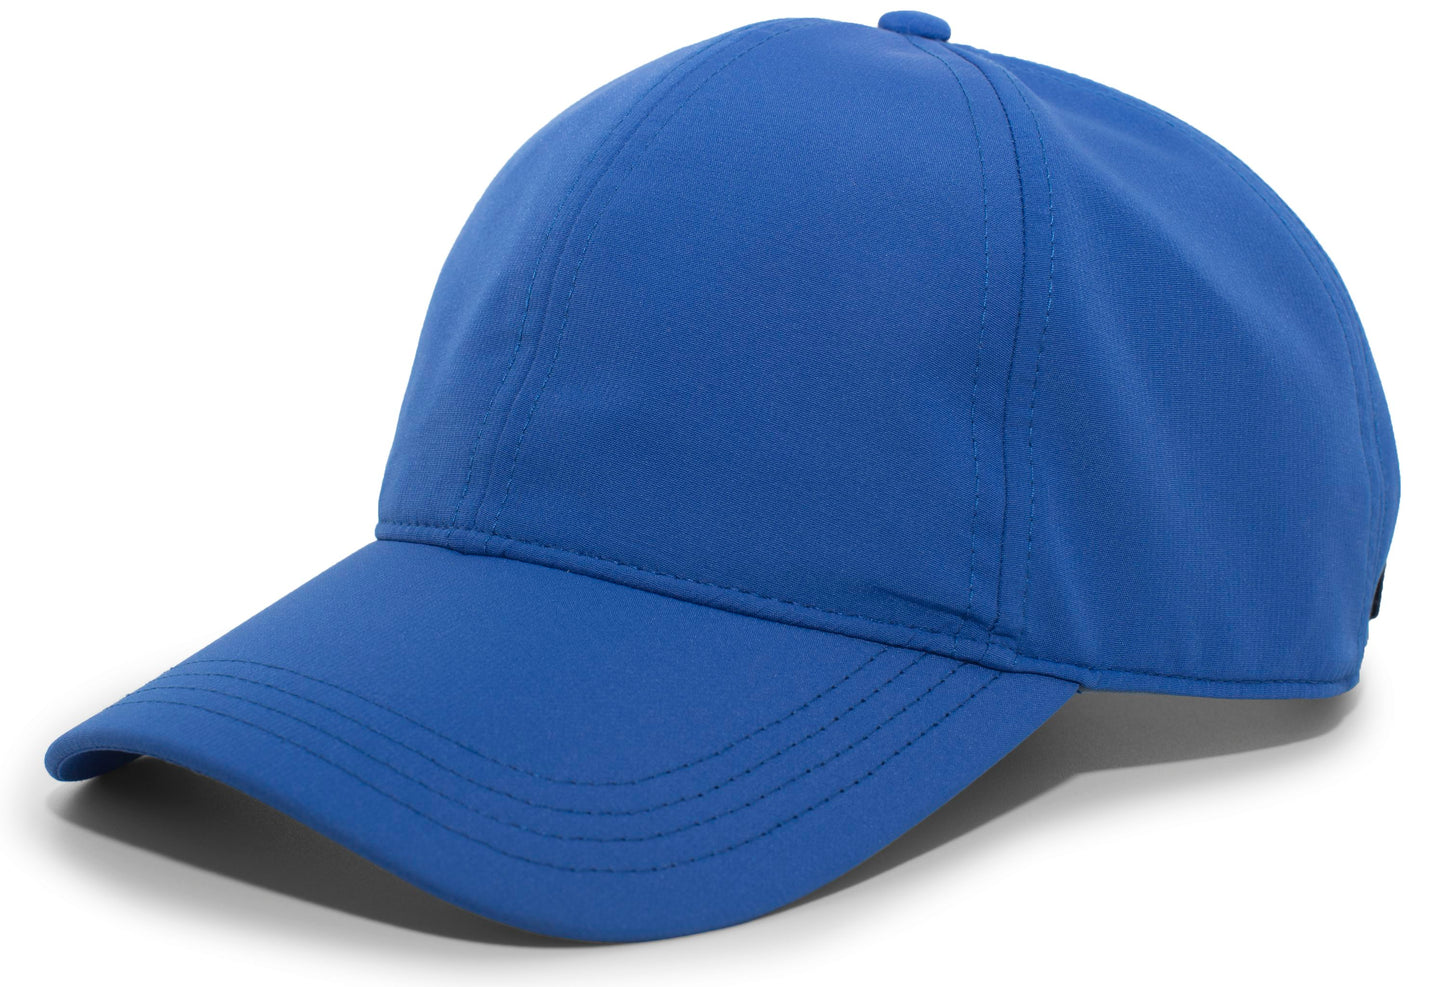 PACIFIC HEADWEAR - LITE SERIES ADVENTURE HOOK-AND-LOOP ADJUSTABLE CAP